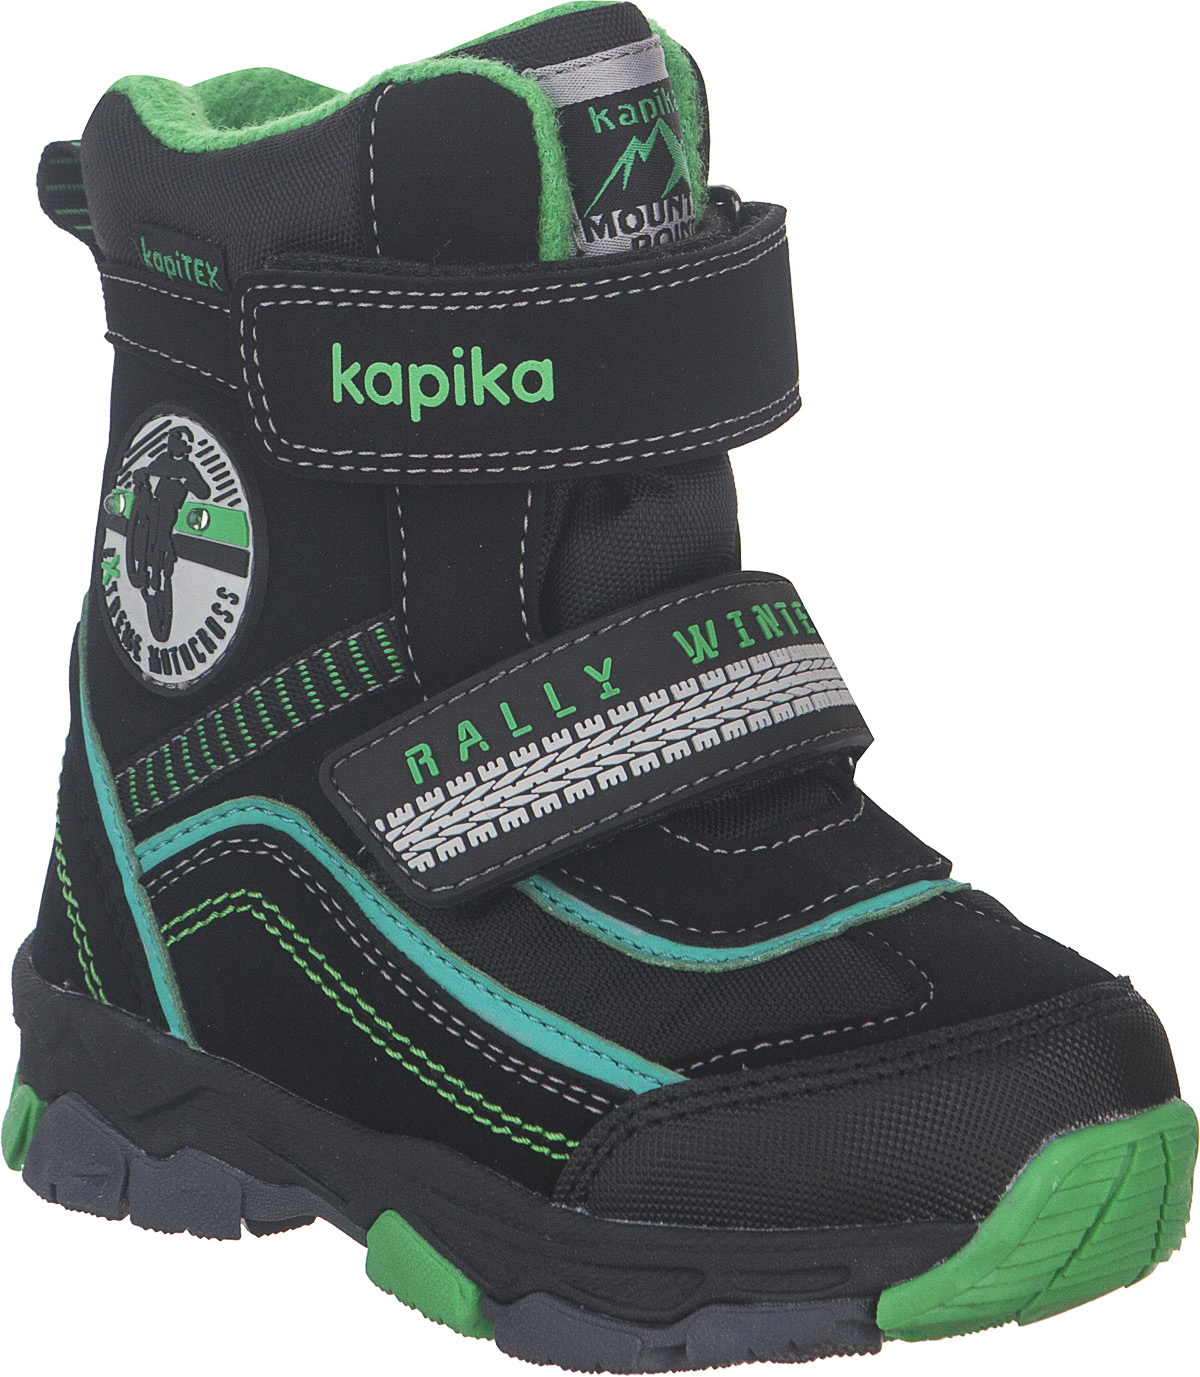 Ботинки для мальчика Kapika KapiTEX, цвет: черный, зеленый. 41230-1. Размер 24